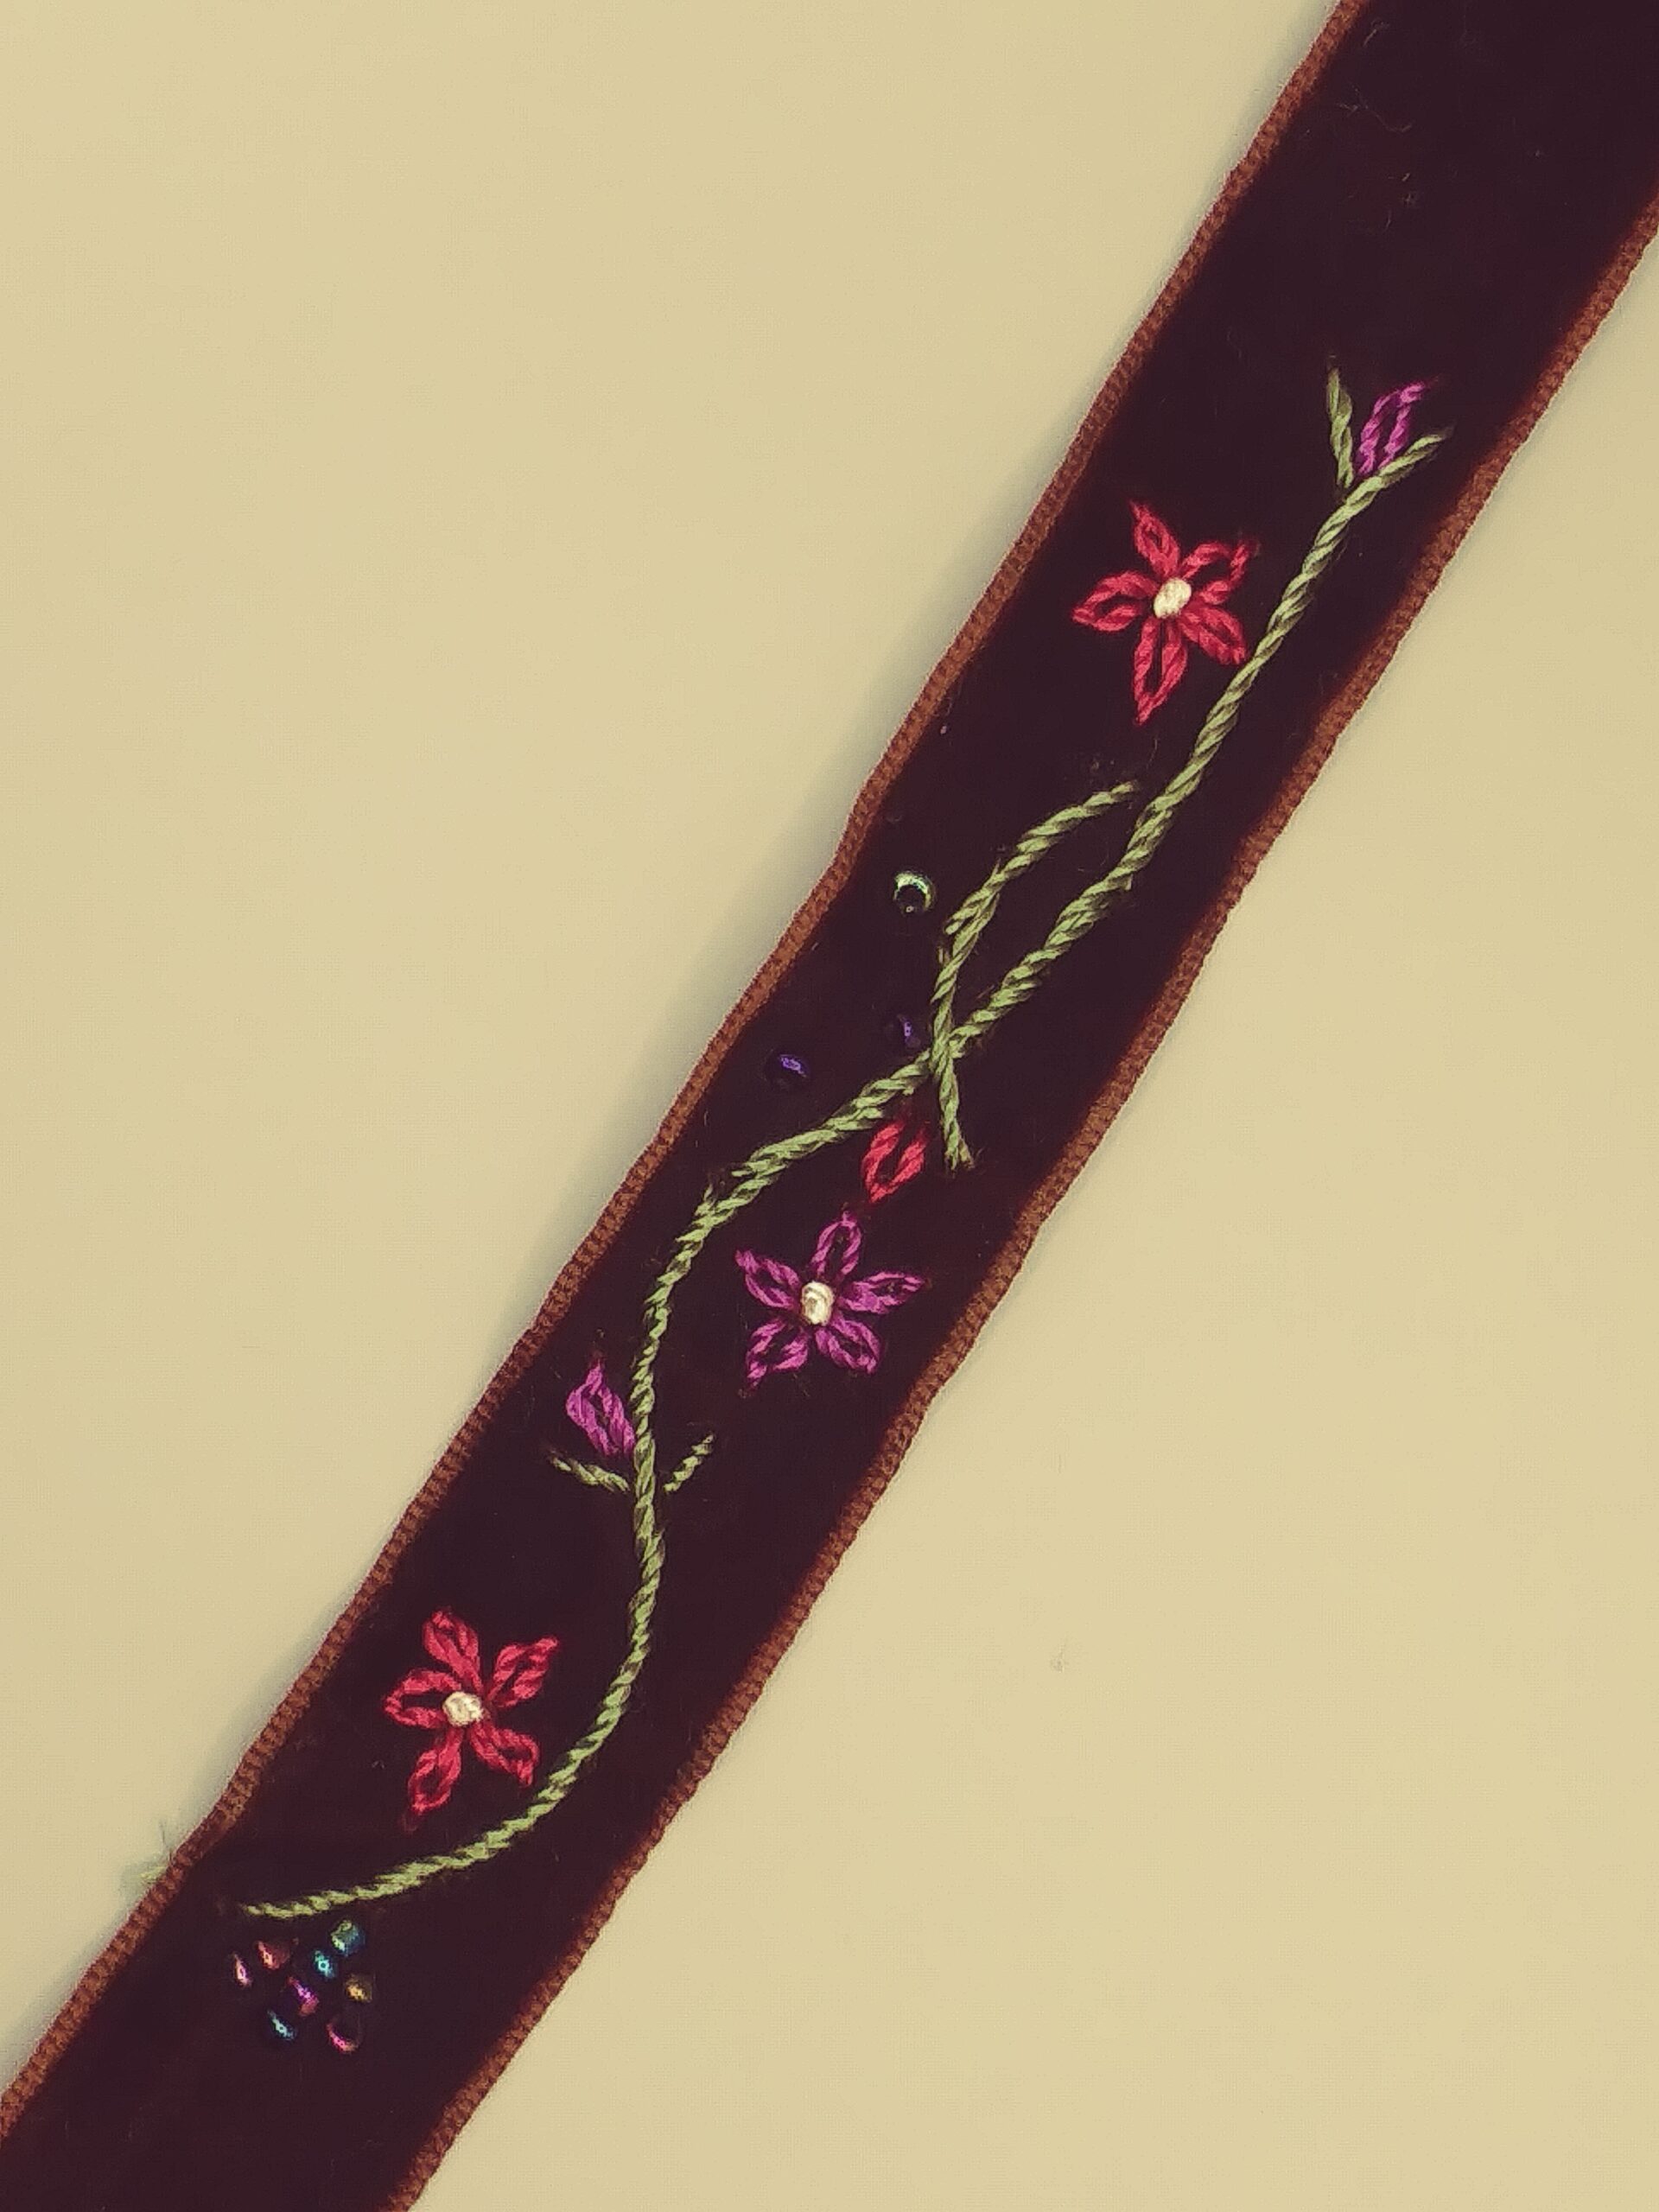 VVR- 1 3/8 Light Brown Velvet Ribbon - made in Switzerland